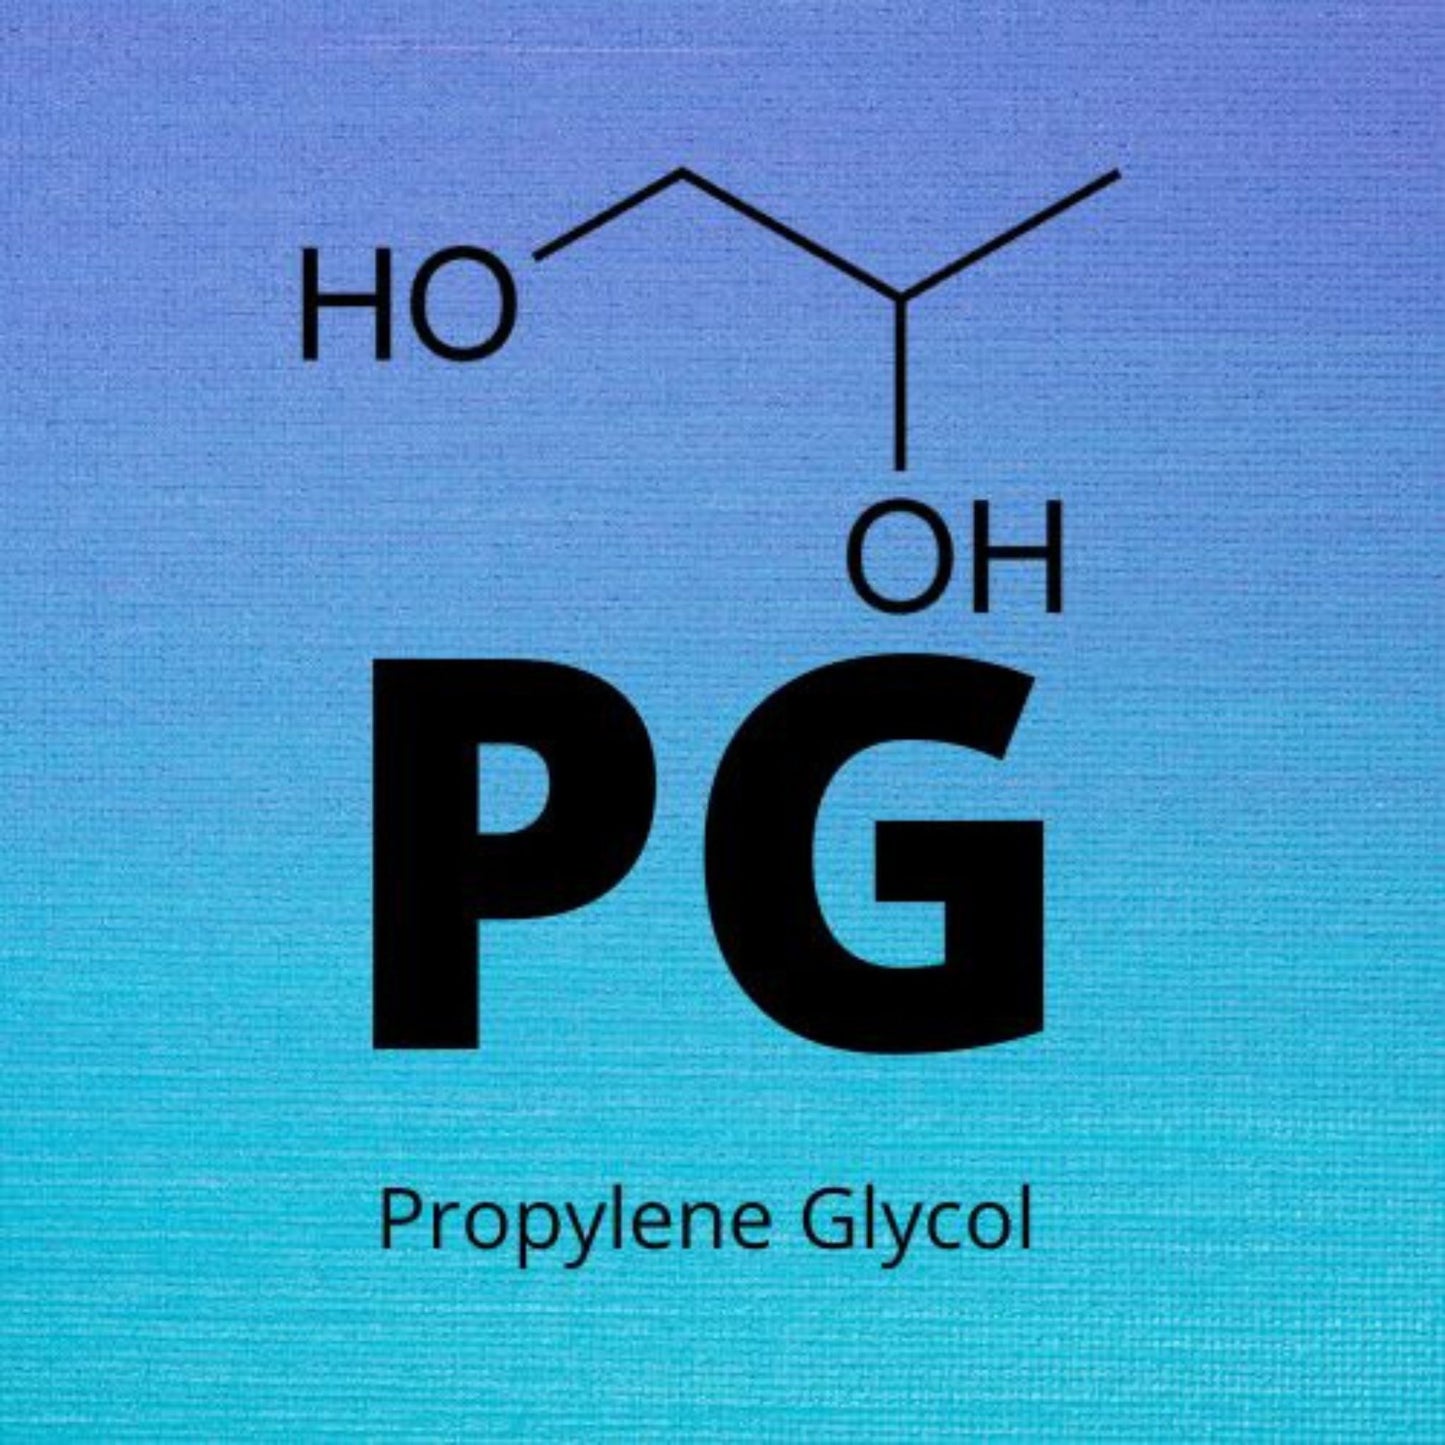 Propylene Glycol (PG)